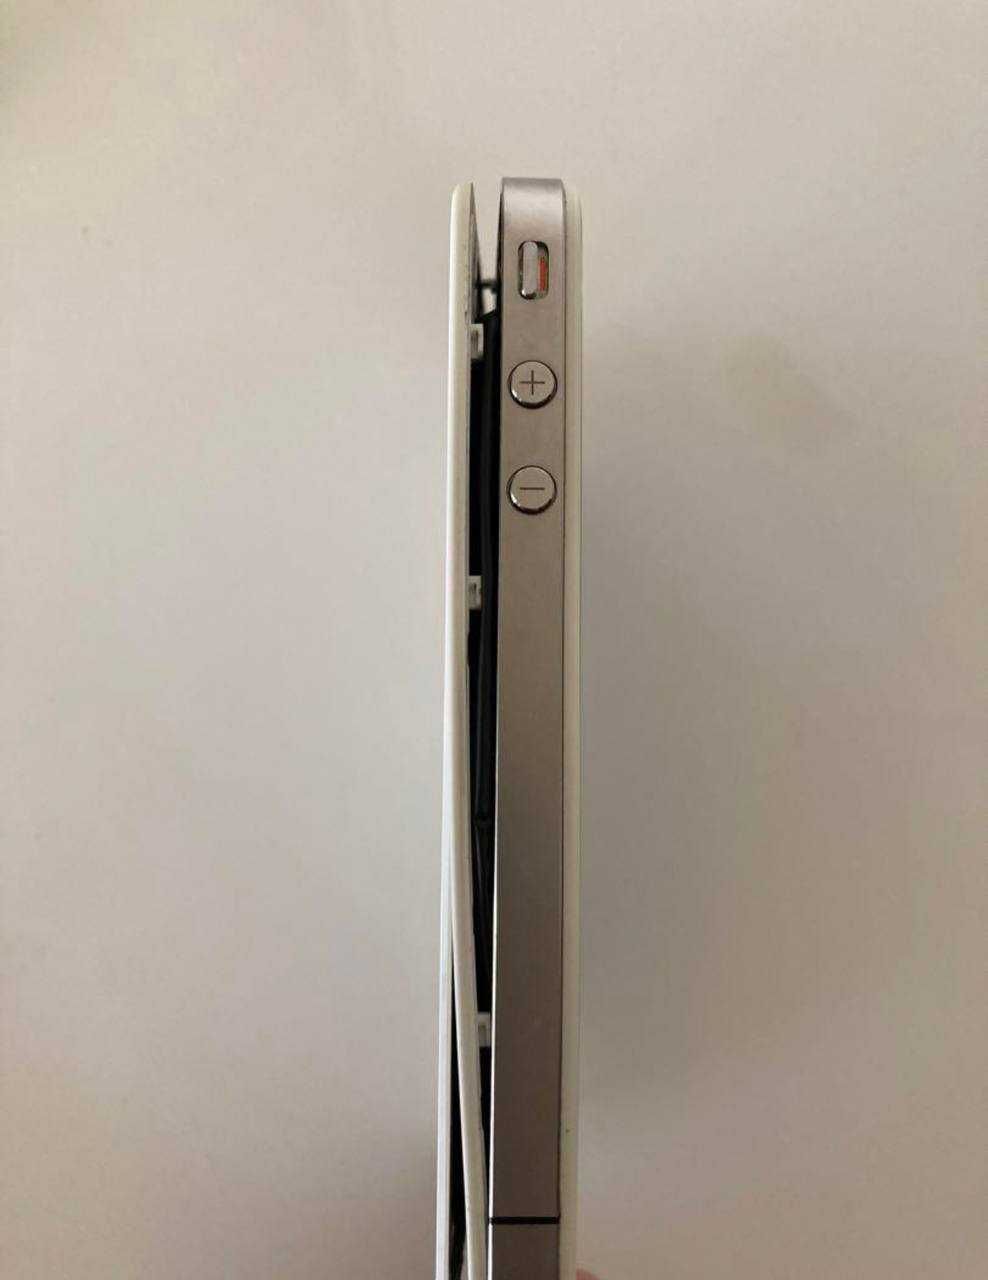 iPhone 4s white, 16gb, c гарантии